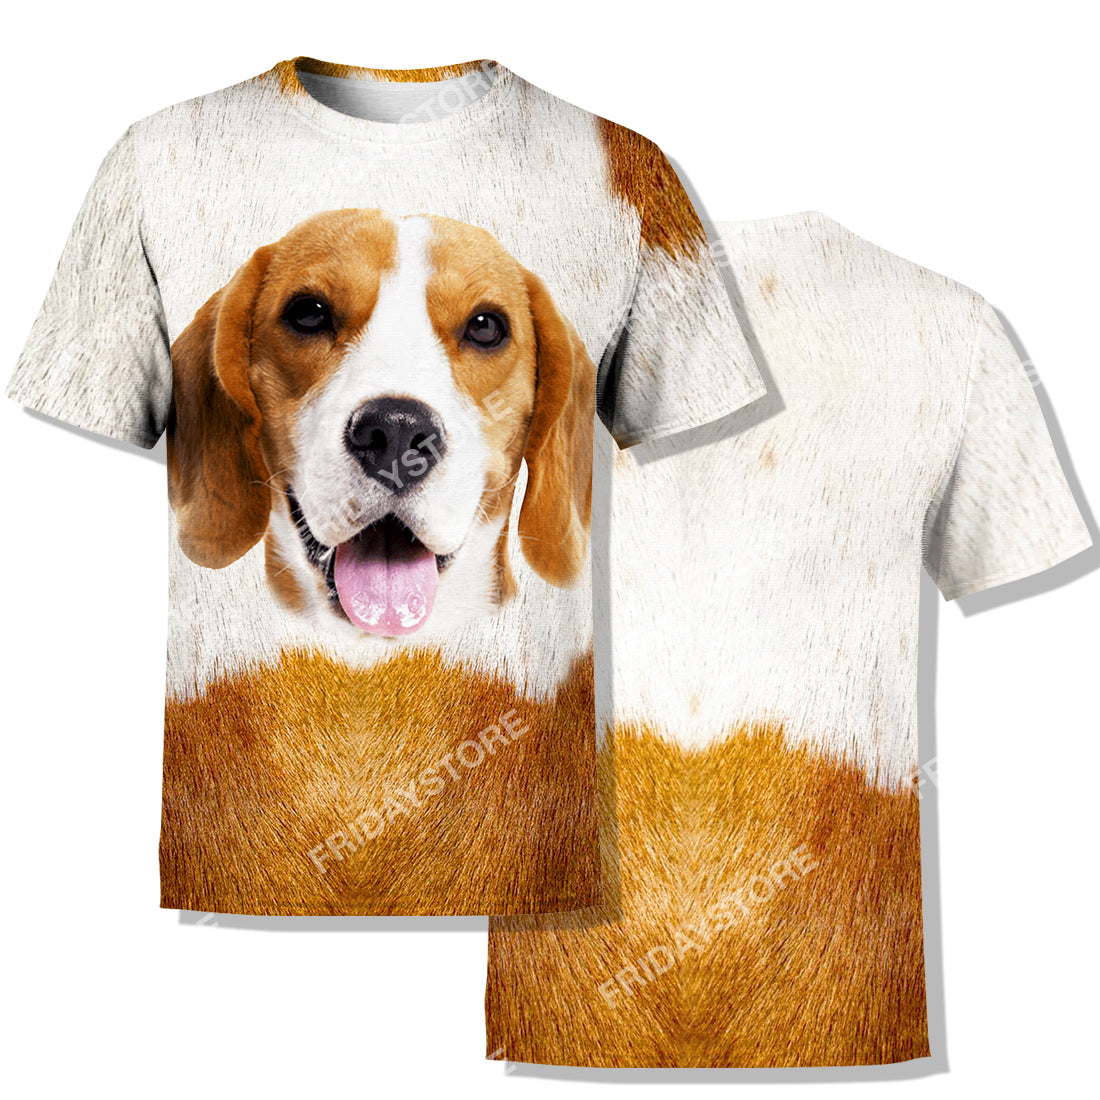 Unifinz Dog Hoodie Beagle Dog Hoodie Beagle Dog Graphic White Brown T Shirt Amazing Dog Shirt Sweater Tank 2026